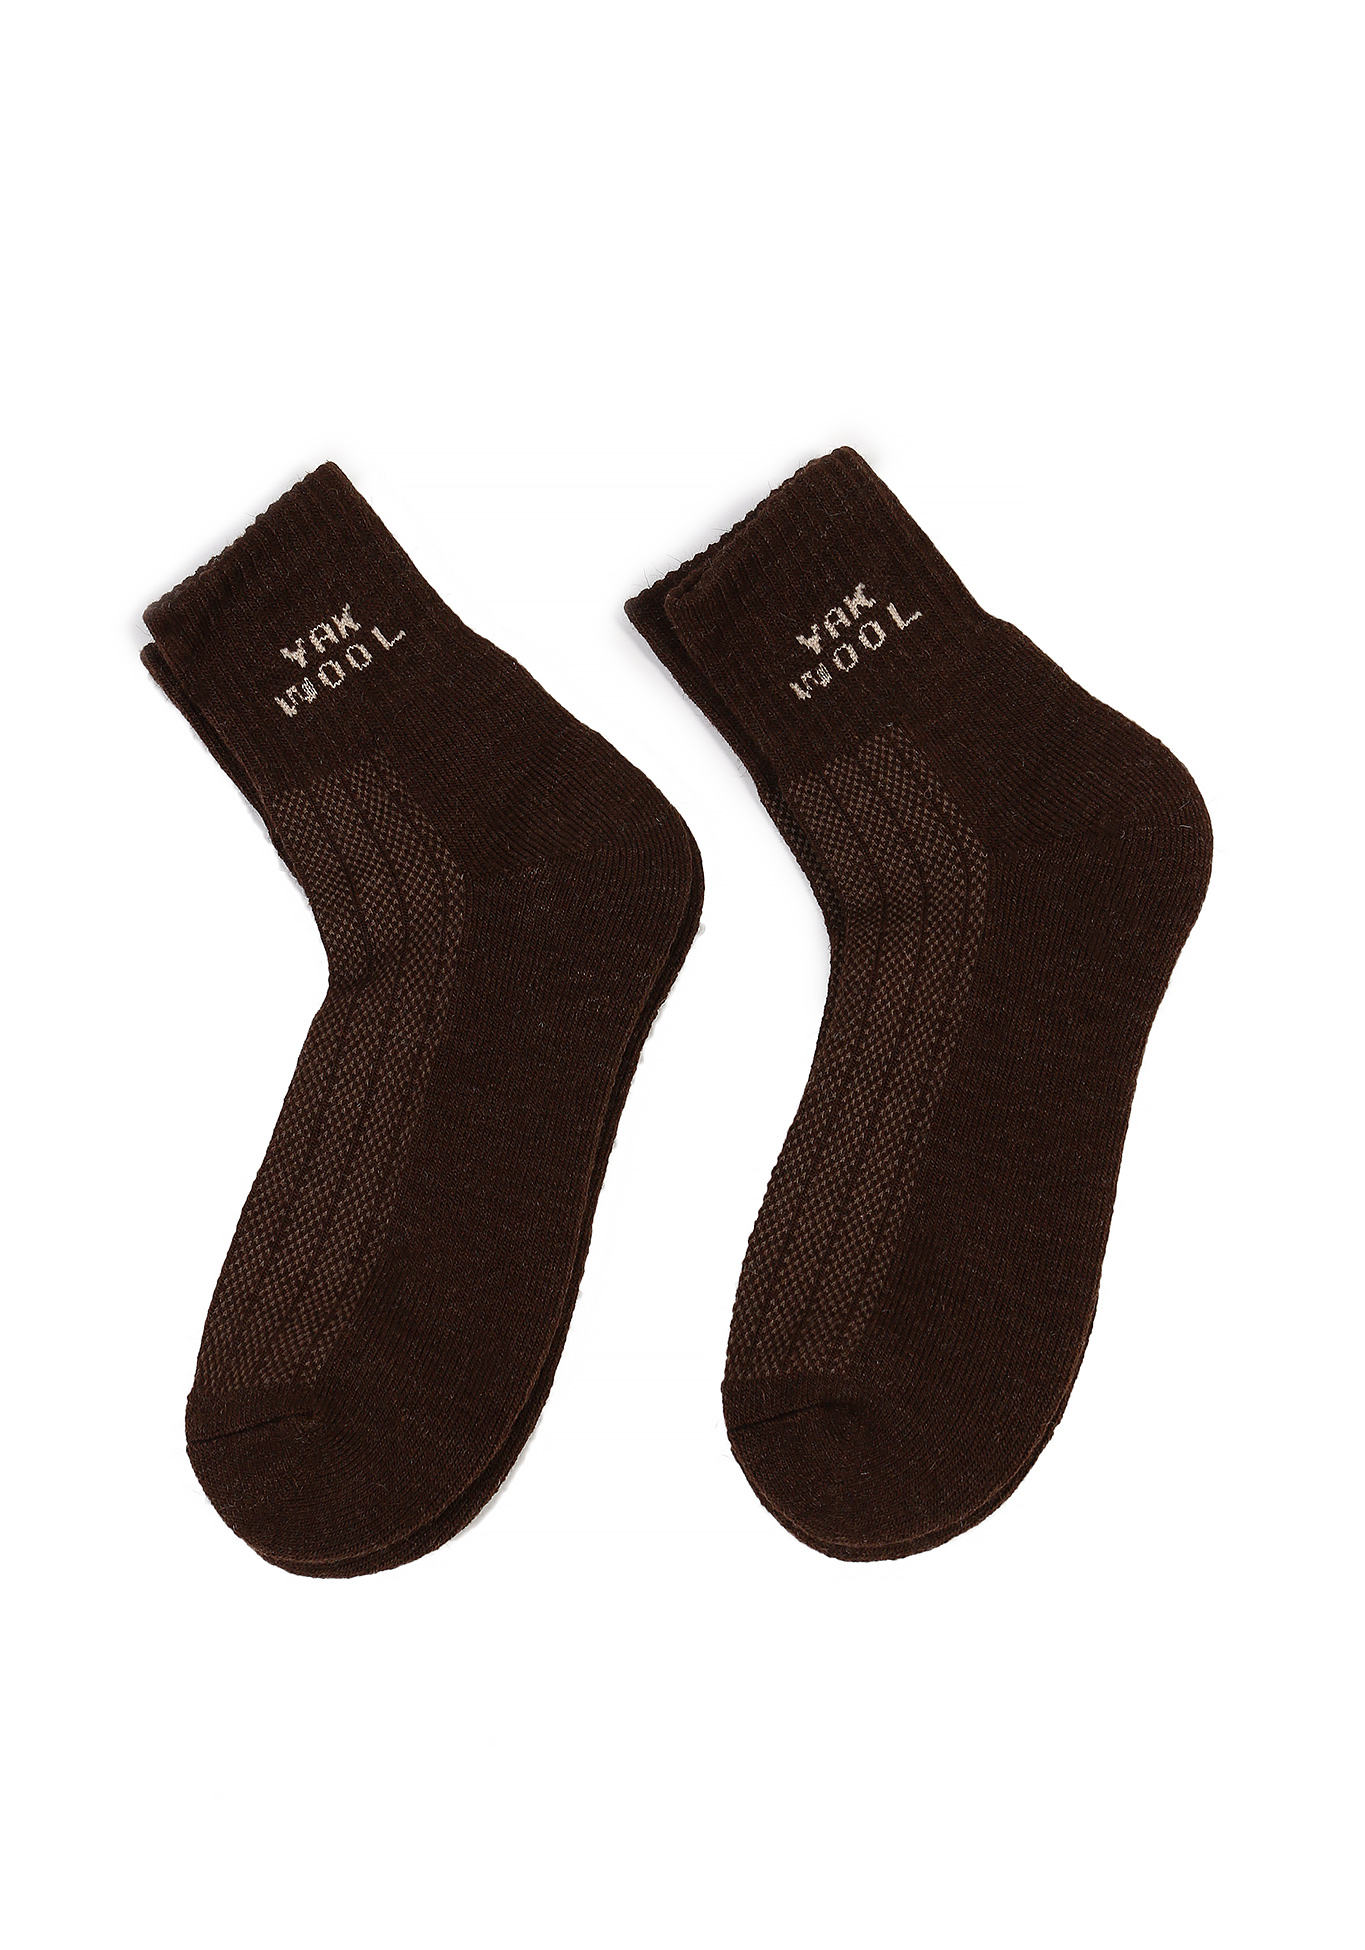 Носки из шерсти яка, 2 шт Центр Доктор, цвет коричневый, размер 36-37 (23)